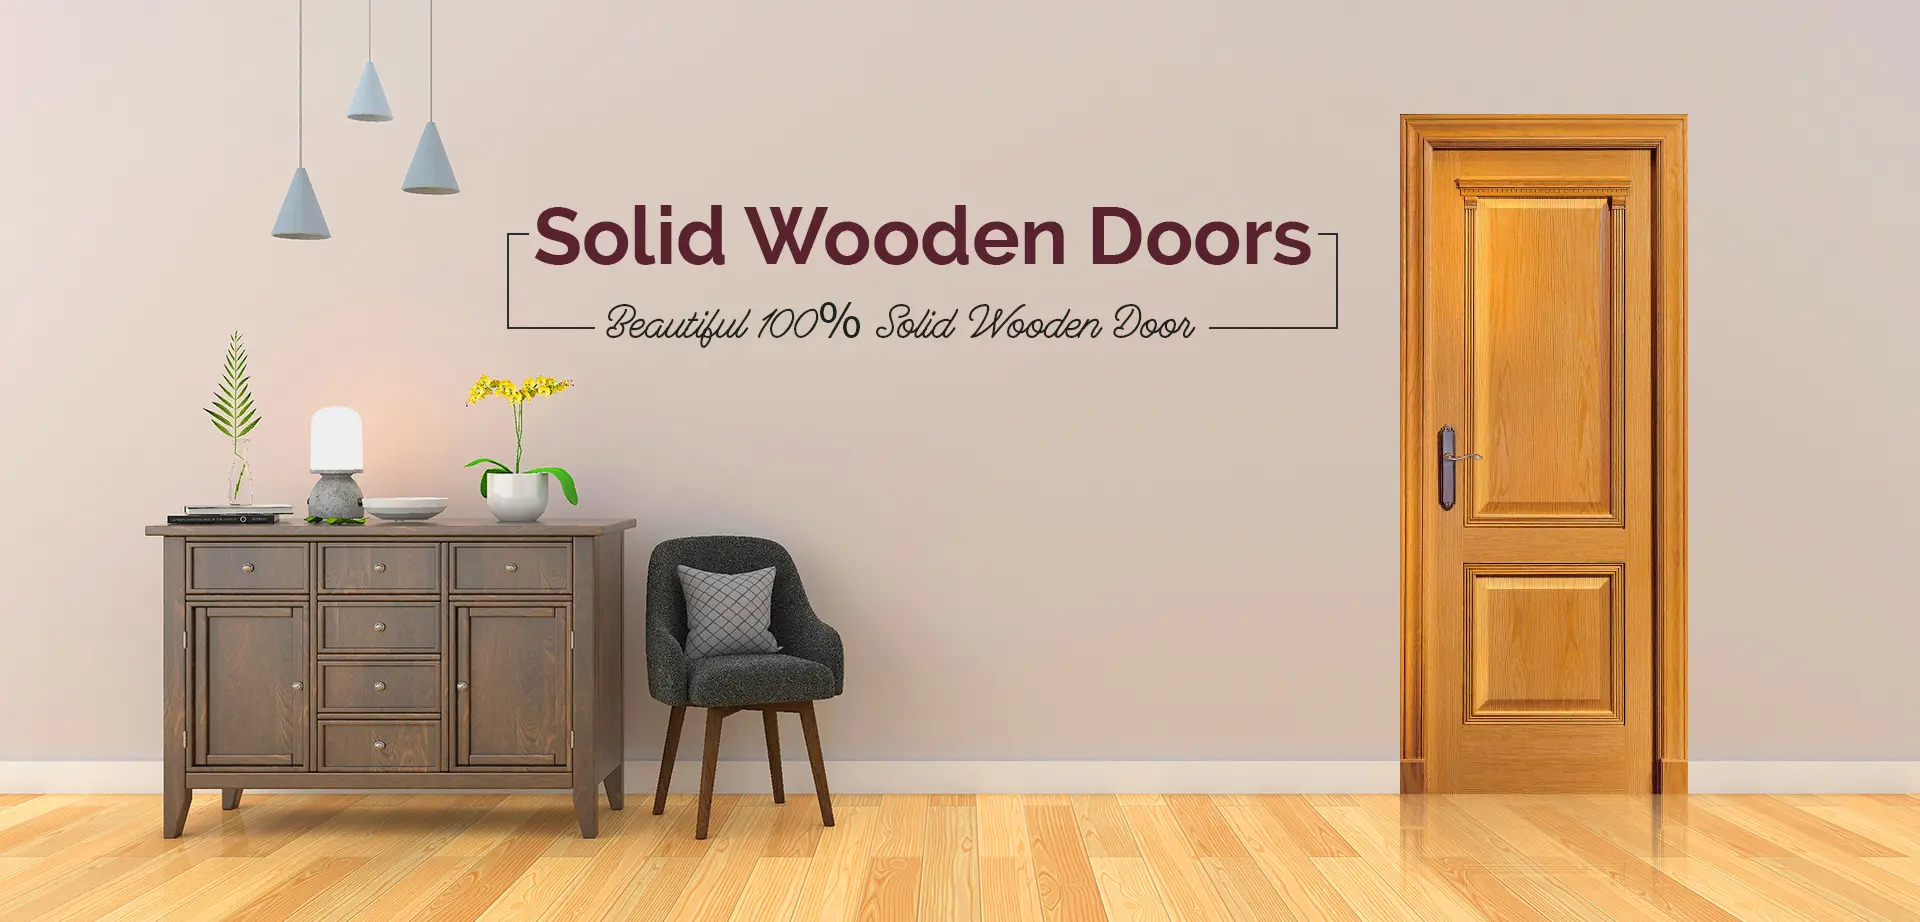 Solid Wooden Door Manufacturer in India